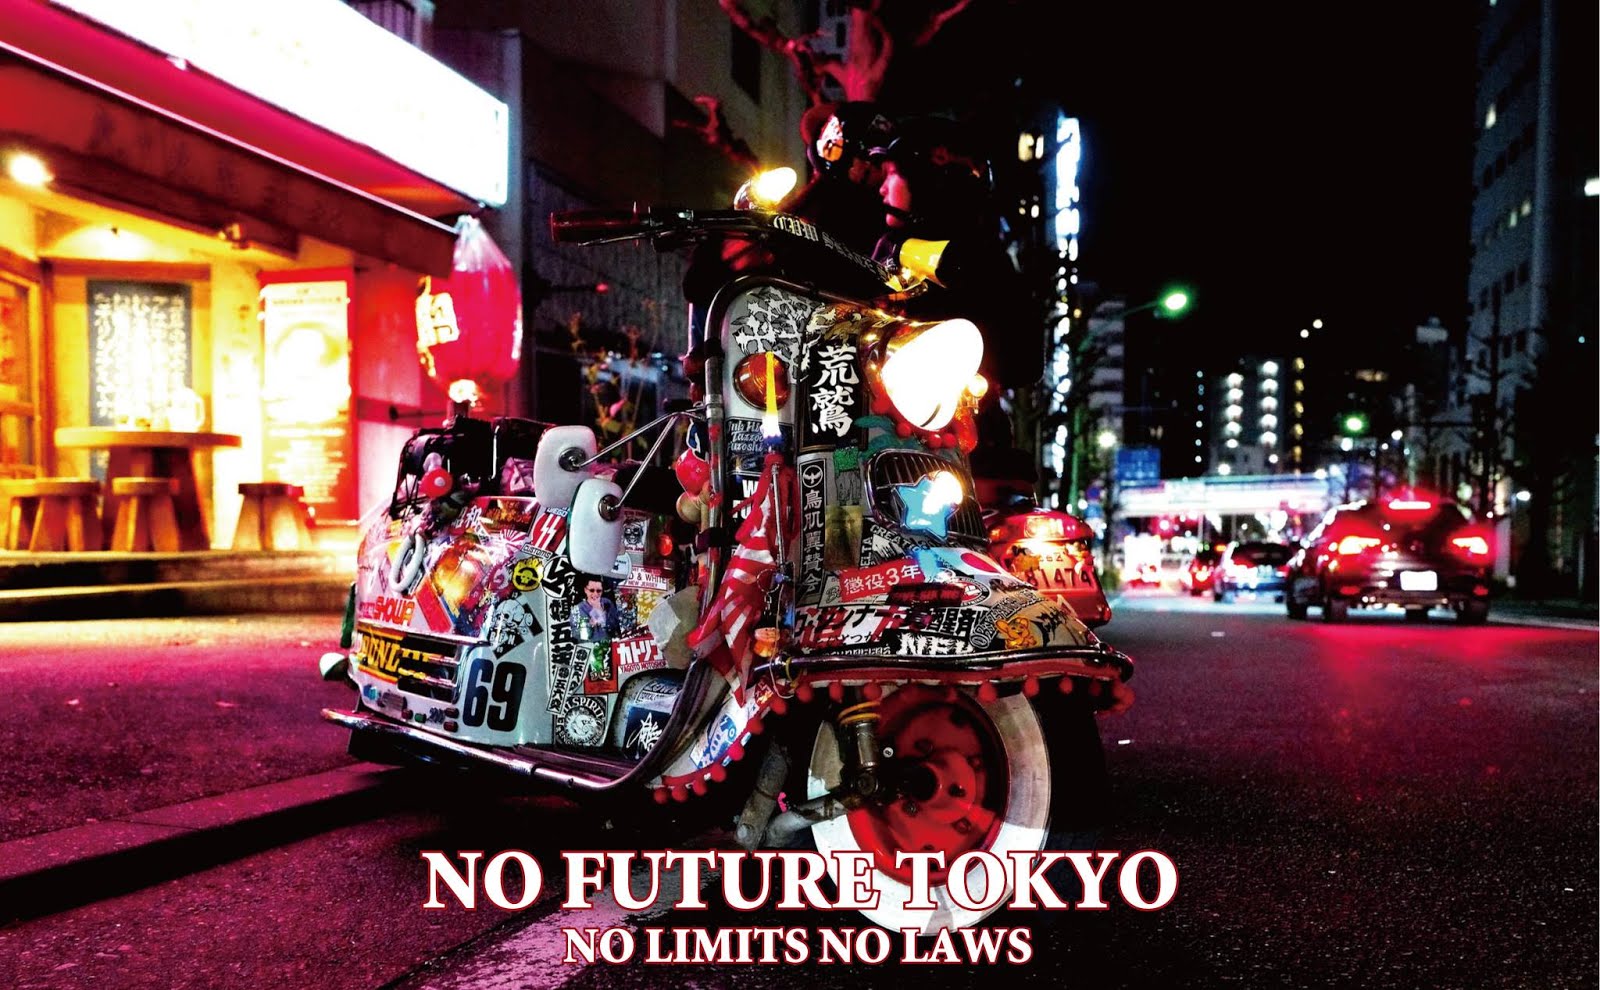 NO FUTURE TOKYO